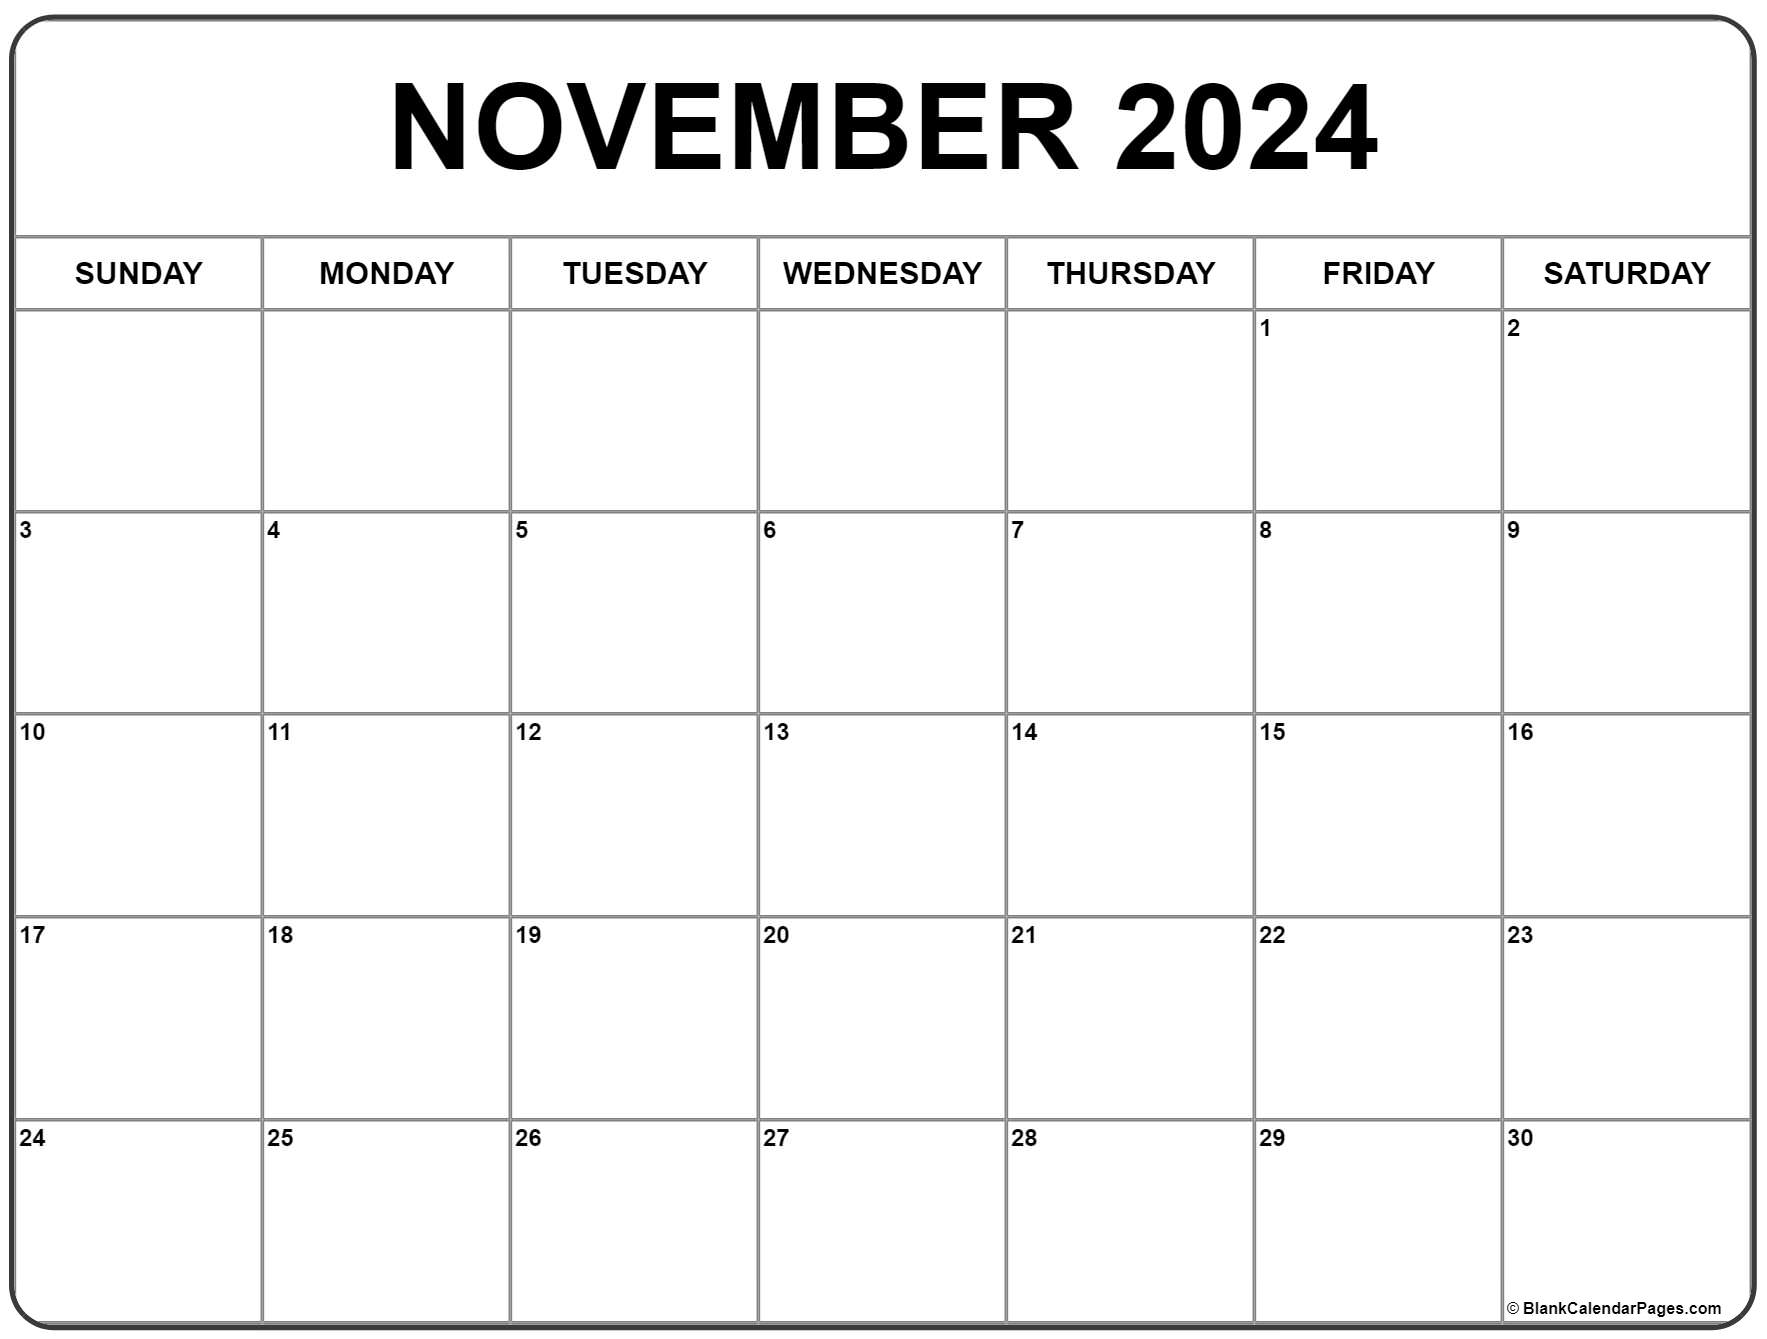 November Calendar 2022 Printable November 2022 Calendar | Free Printable Calendar Templates